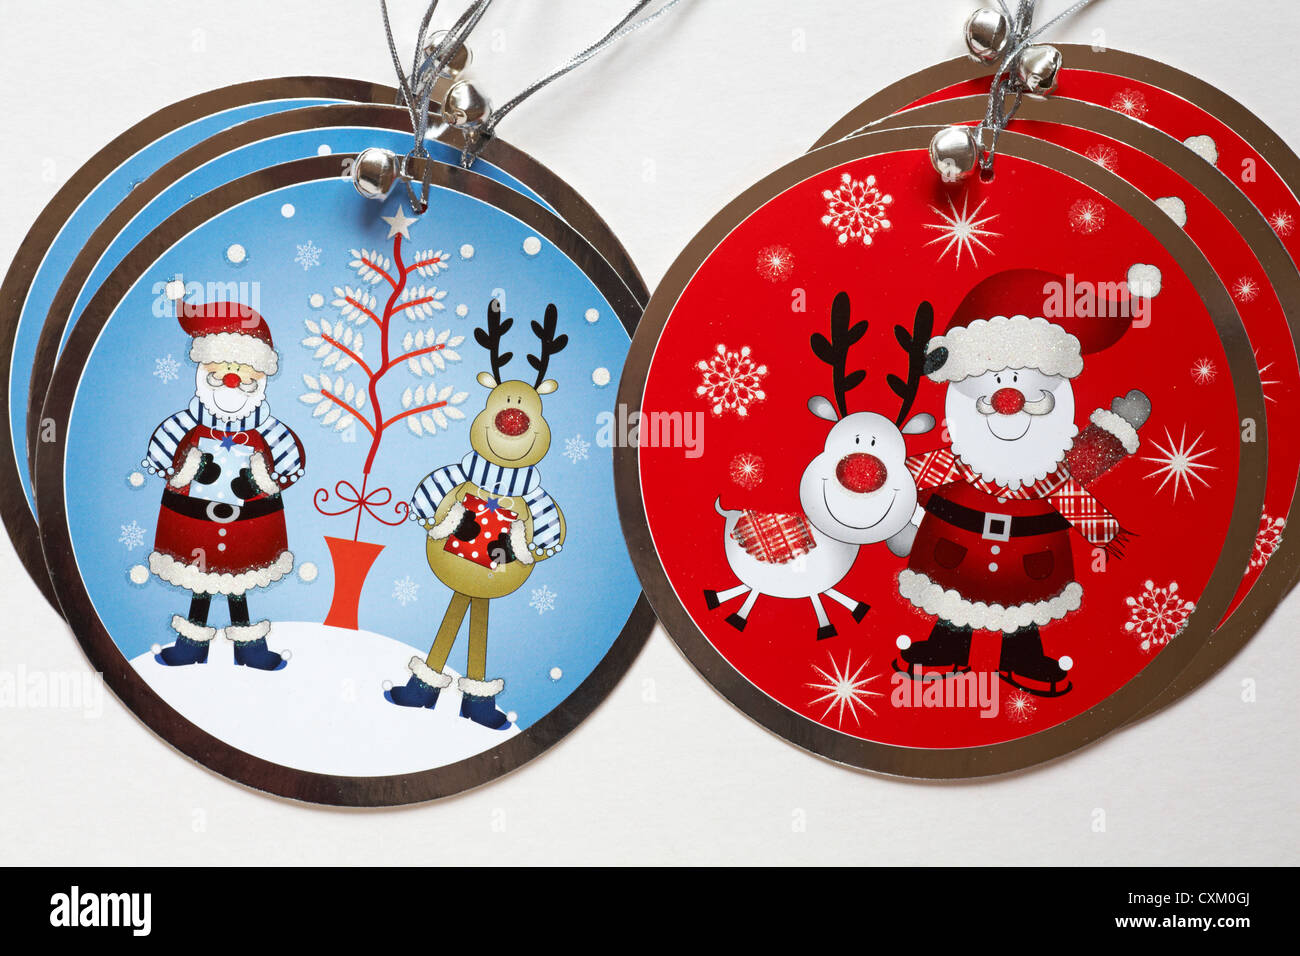 Luxus Weihnachtsgeschenk Tags mit Santa Claus Weihnachtsmann, Weihnachtsbaum und Rudolph mit der roten Nase auf auf weißem Hintergrund Stockfoto